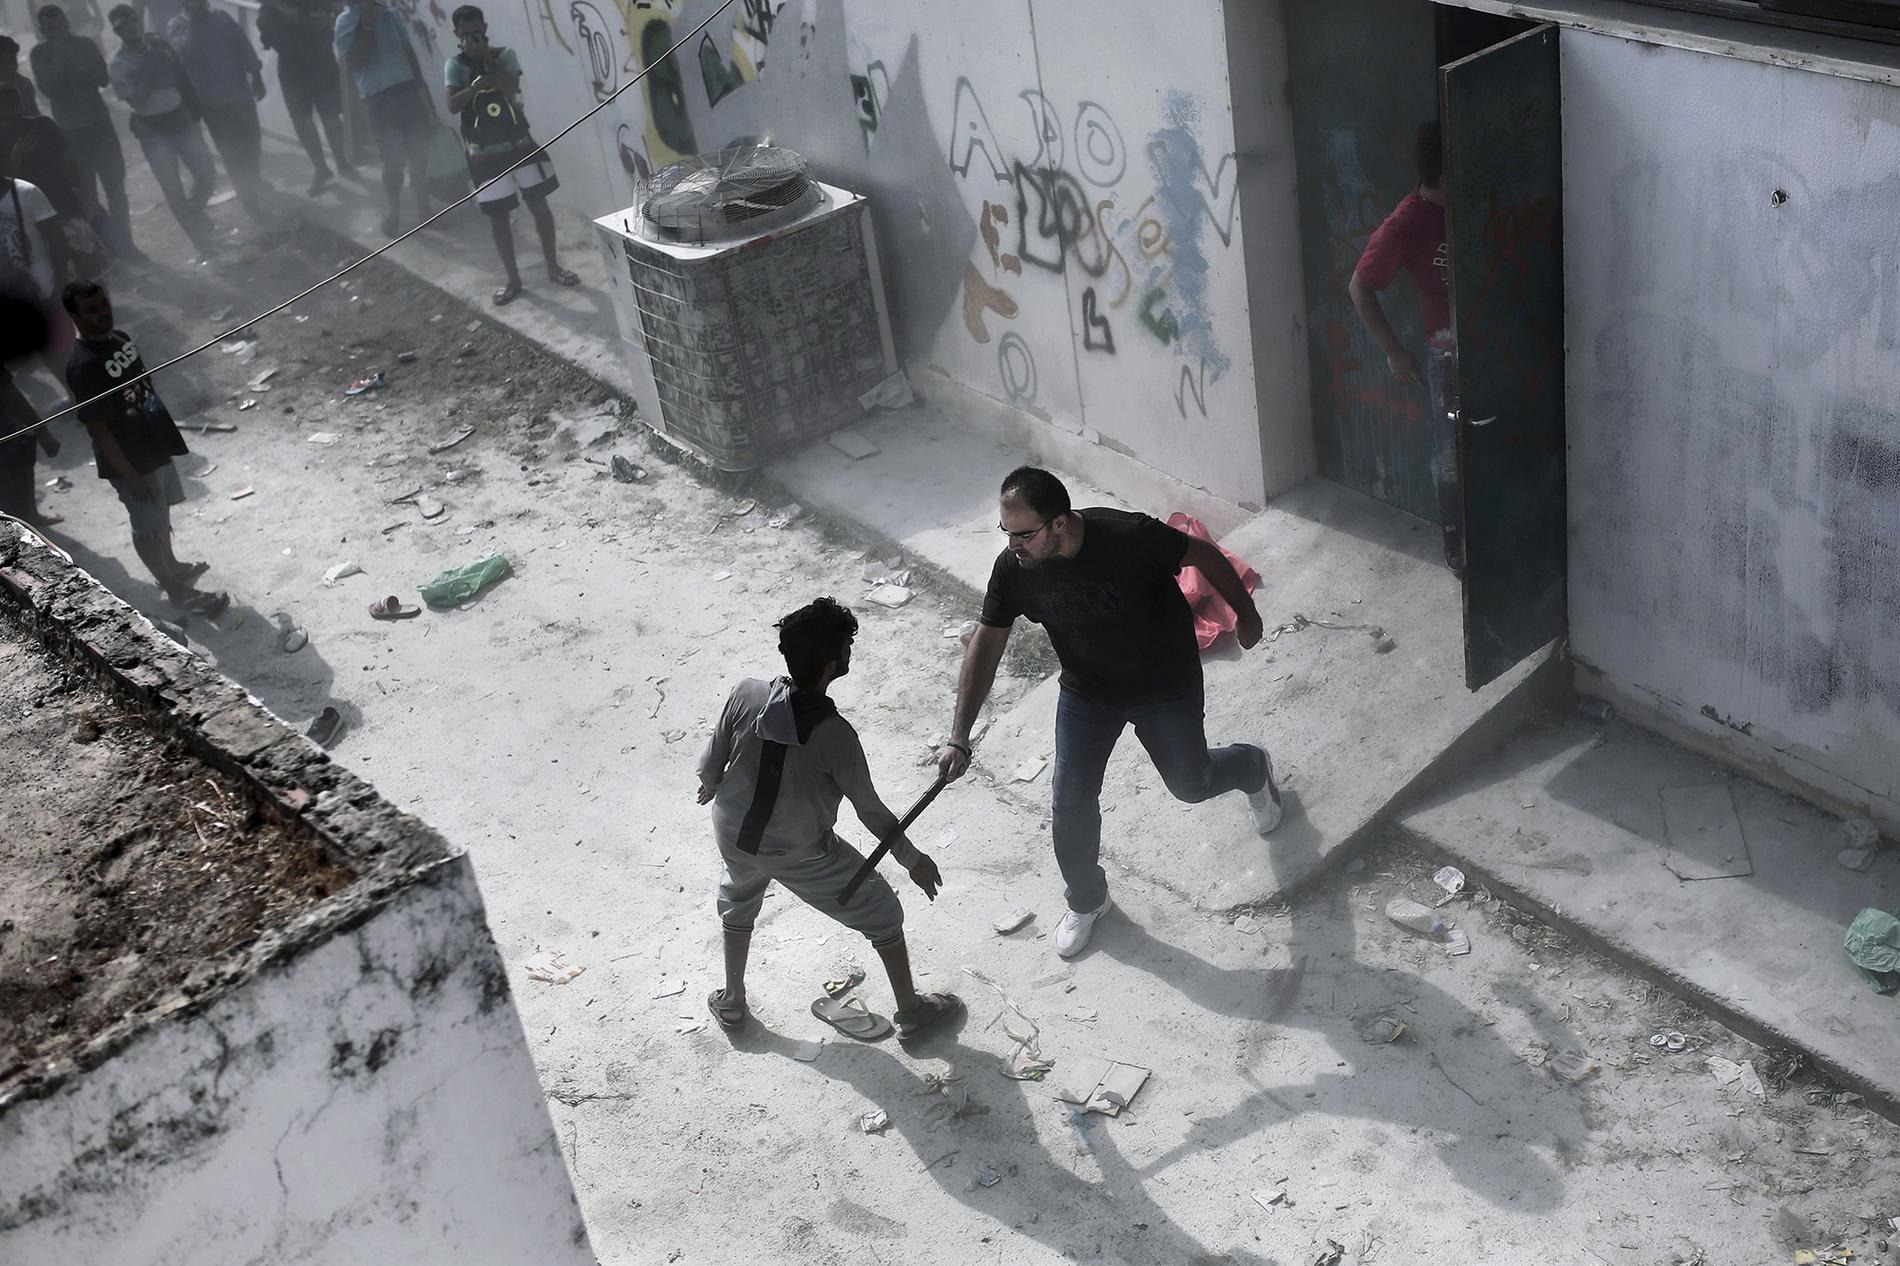 En civilklädd polisman slår mot en flykting med en batong i samband med registreringen av nyanlända på fotbollsstadium på Kos, Grekland.